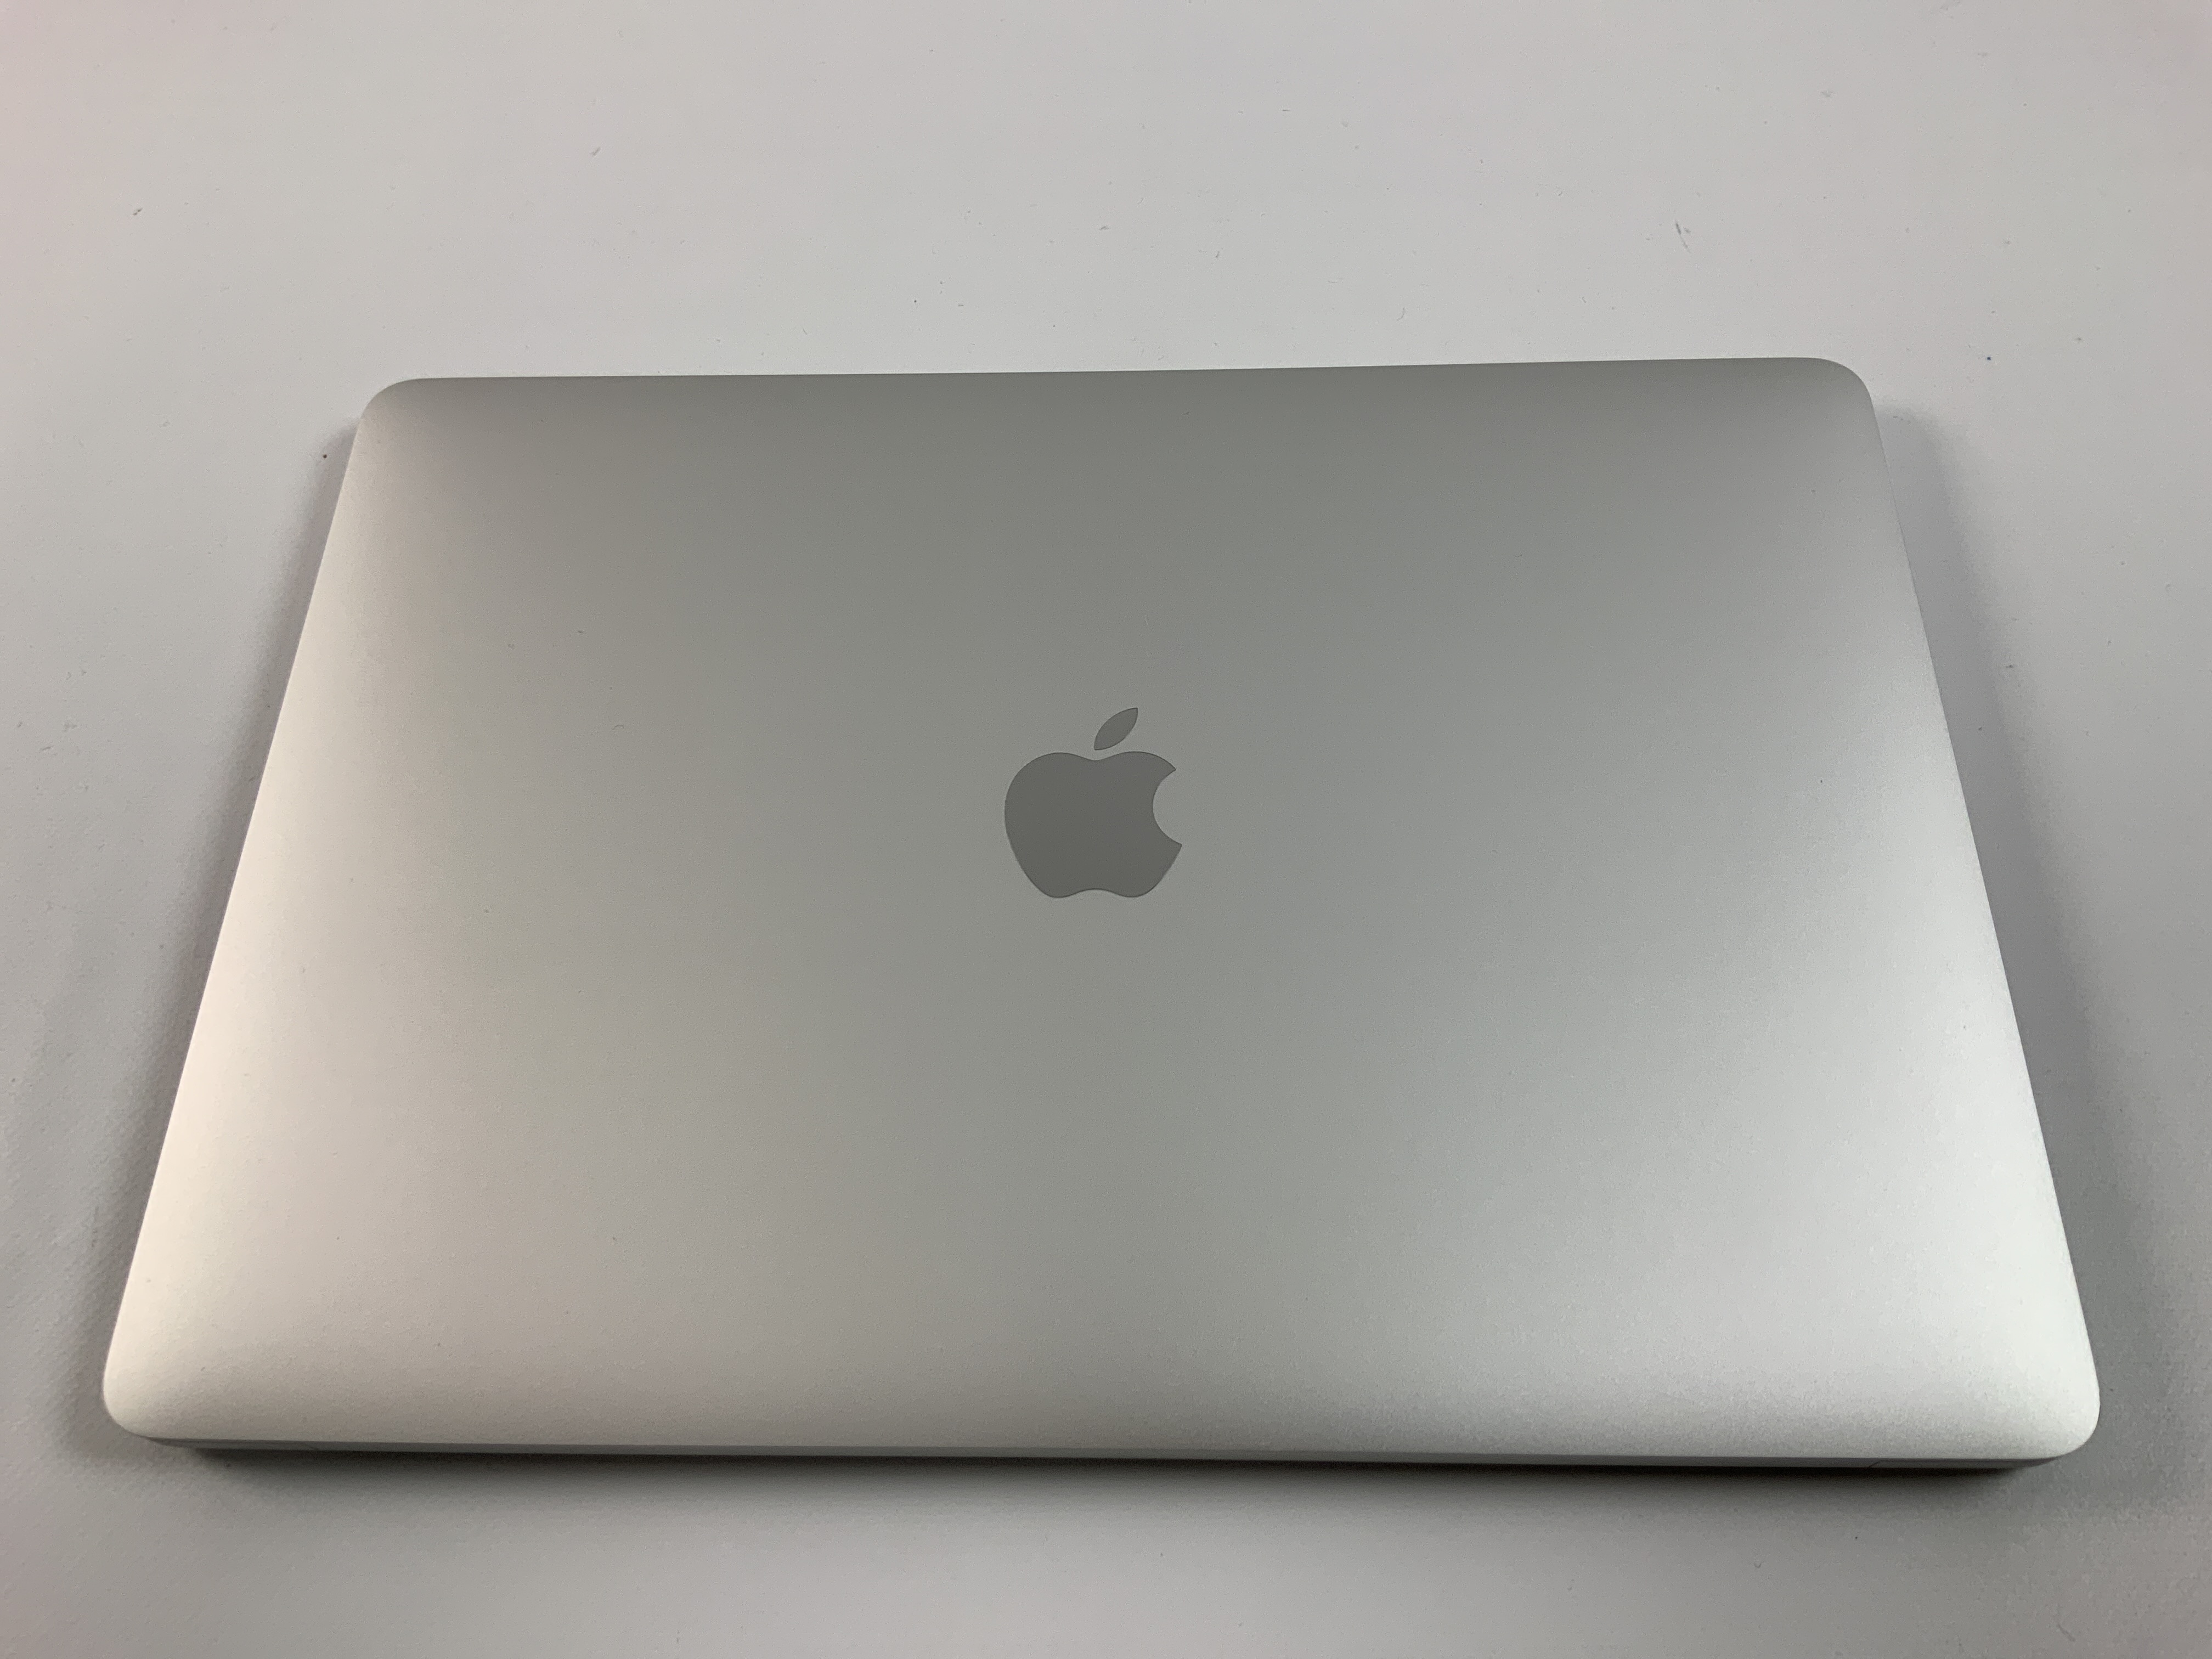 MacBook Pro 13" 4TBT Mid 2020 (Intel Quad-Core i5 2.0 GHz 16 GB RAM 1 TB SSD), Silver, Intel Quad-Core i5 2.0 GHz, 16 GB RAM, 1 TB SSD, bild 2